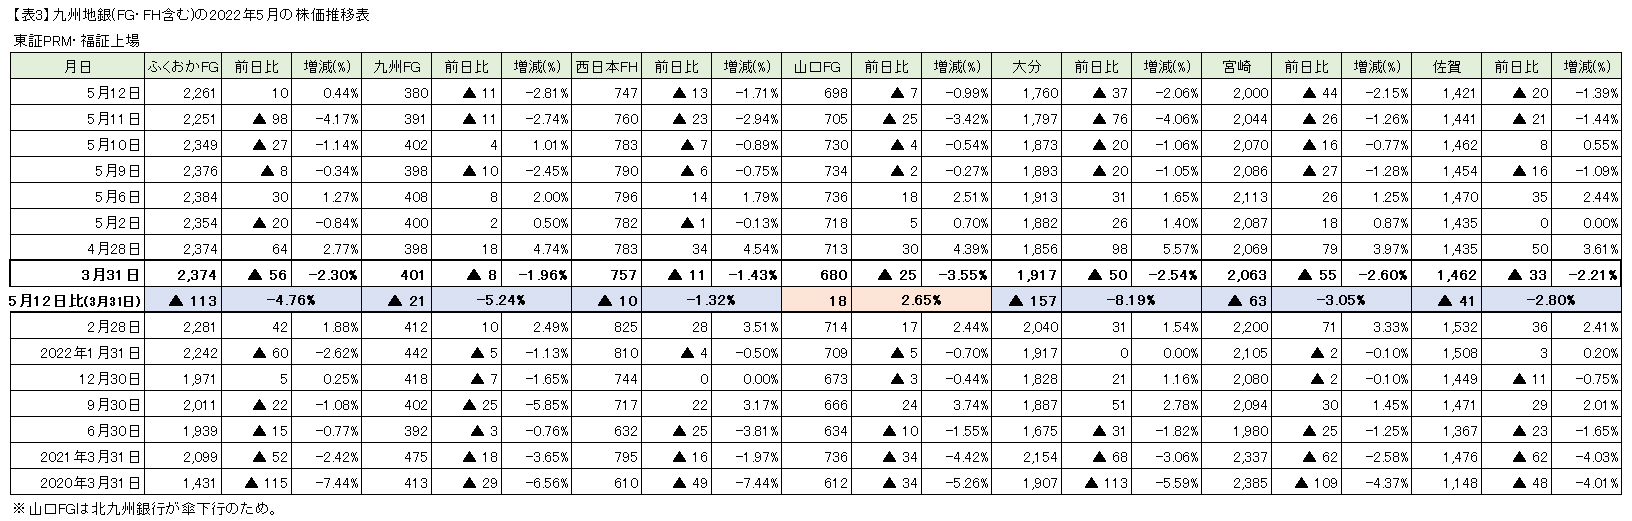 【表3】九州地銀(FG・FH含む)の2022年5月の株価推移表